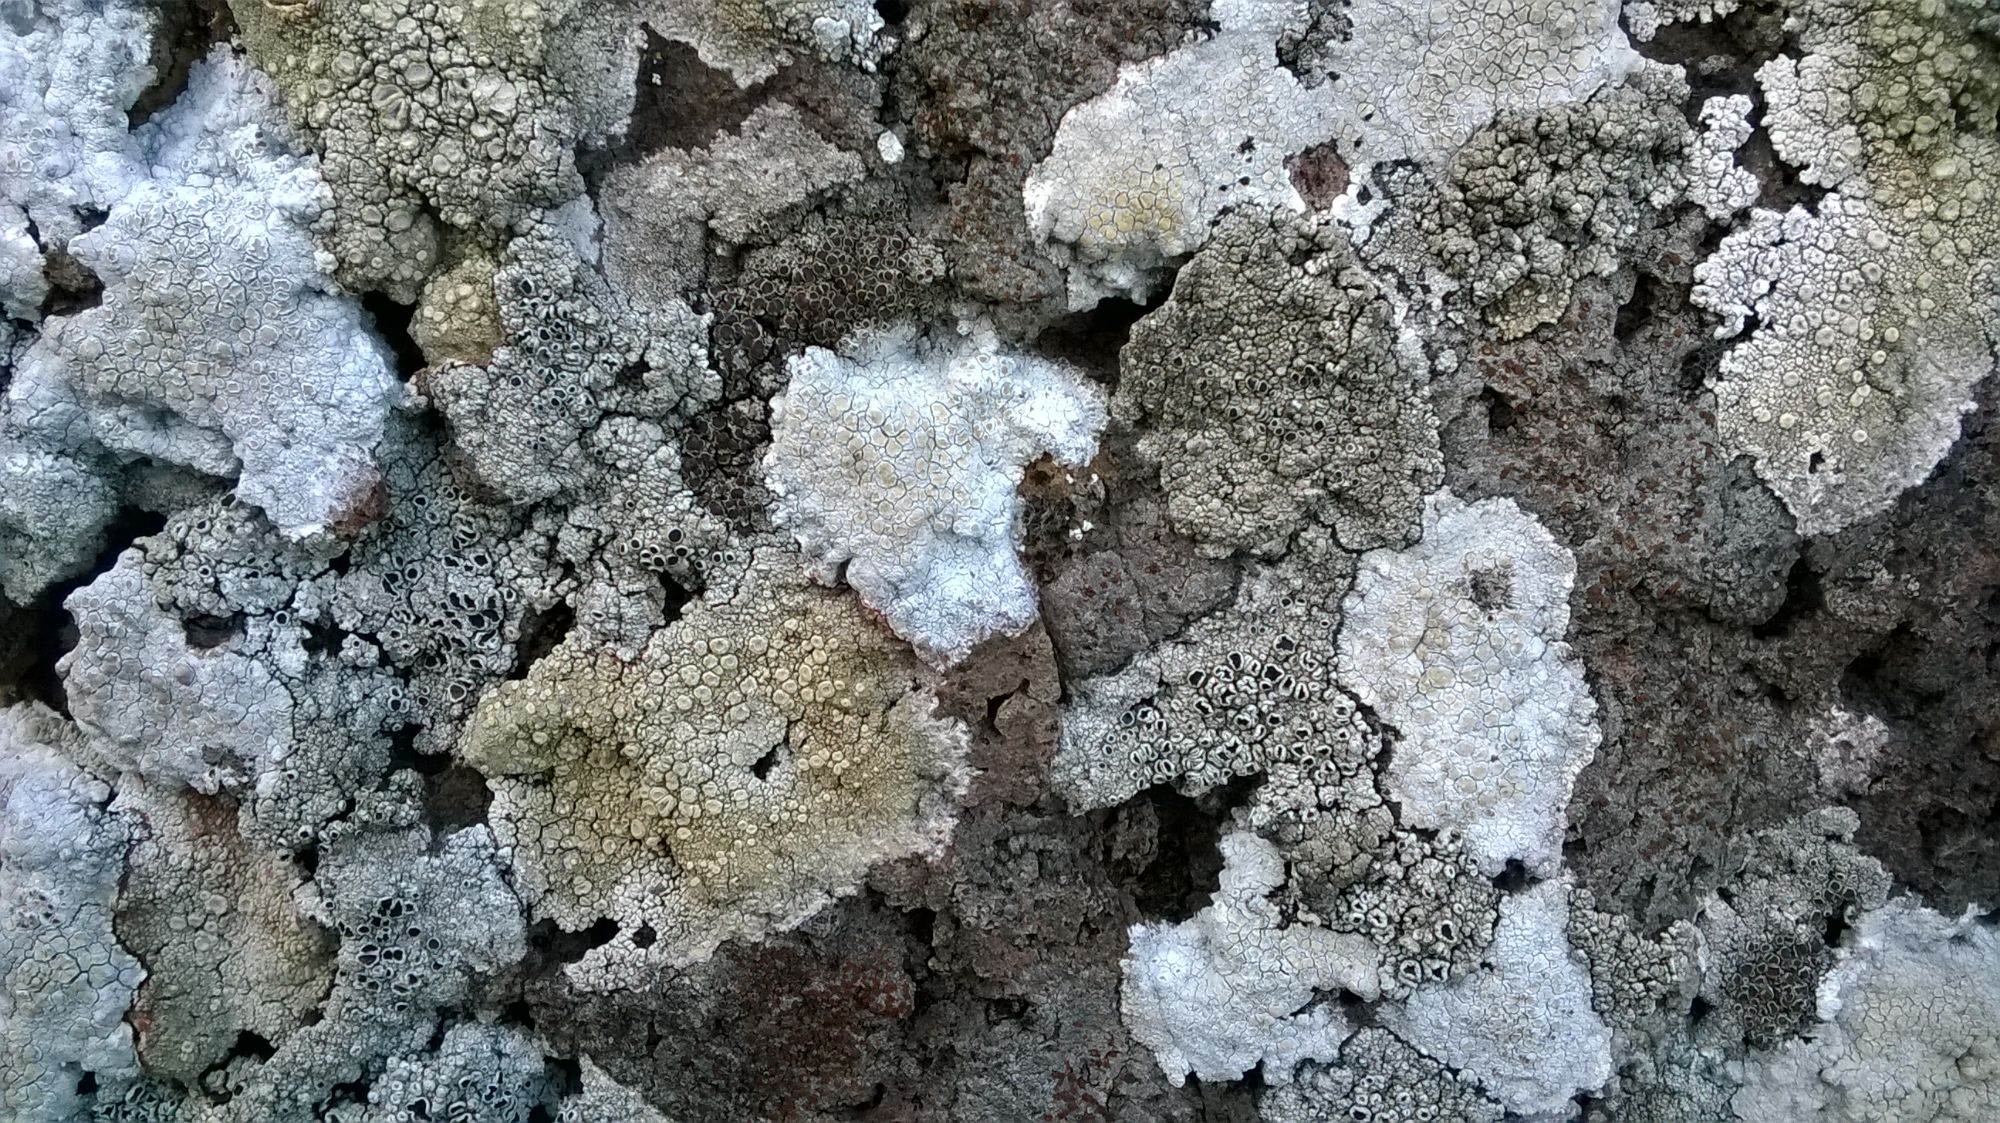 Lichens on rock